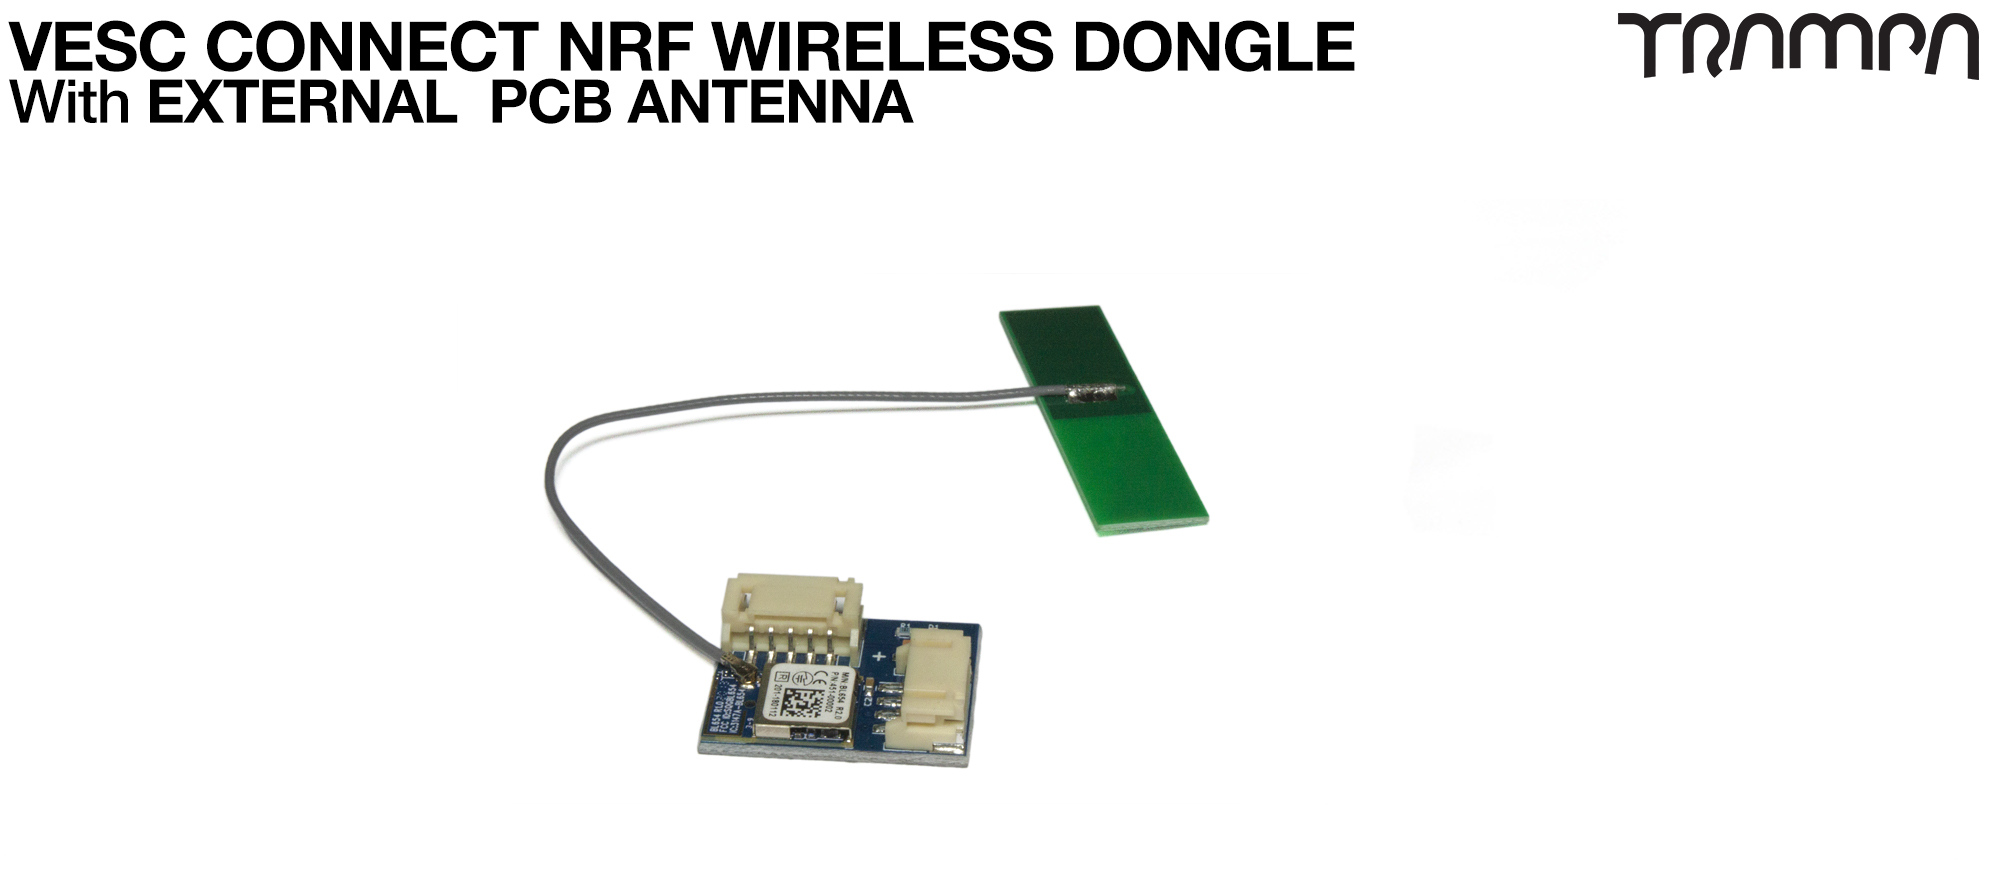 1x NRF Dongle - EXTERNAL PCB Antenna (+£32.50)